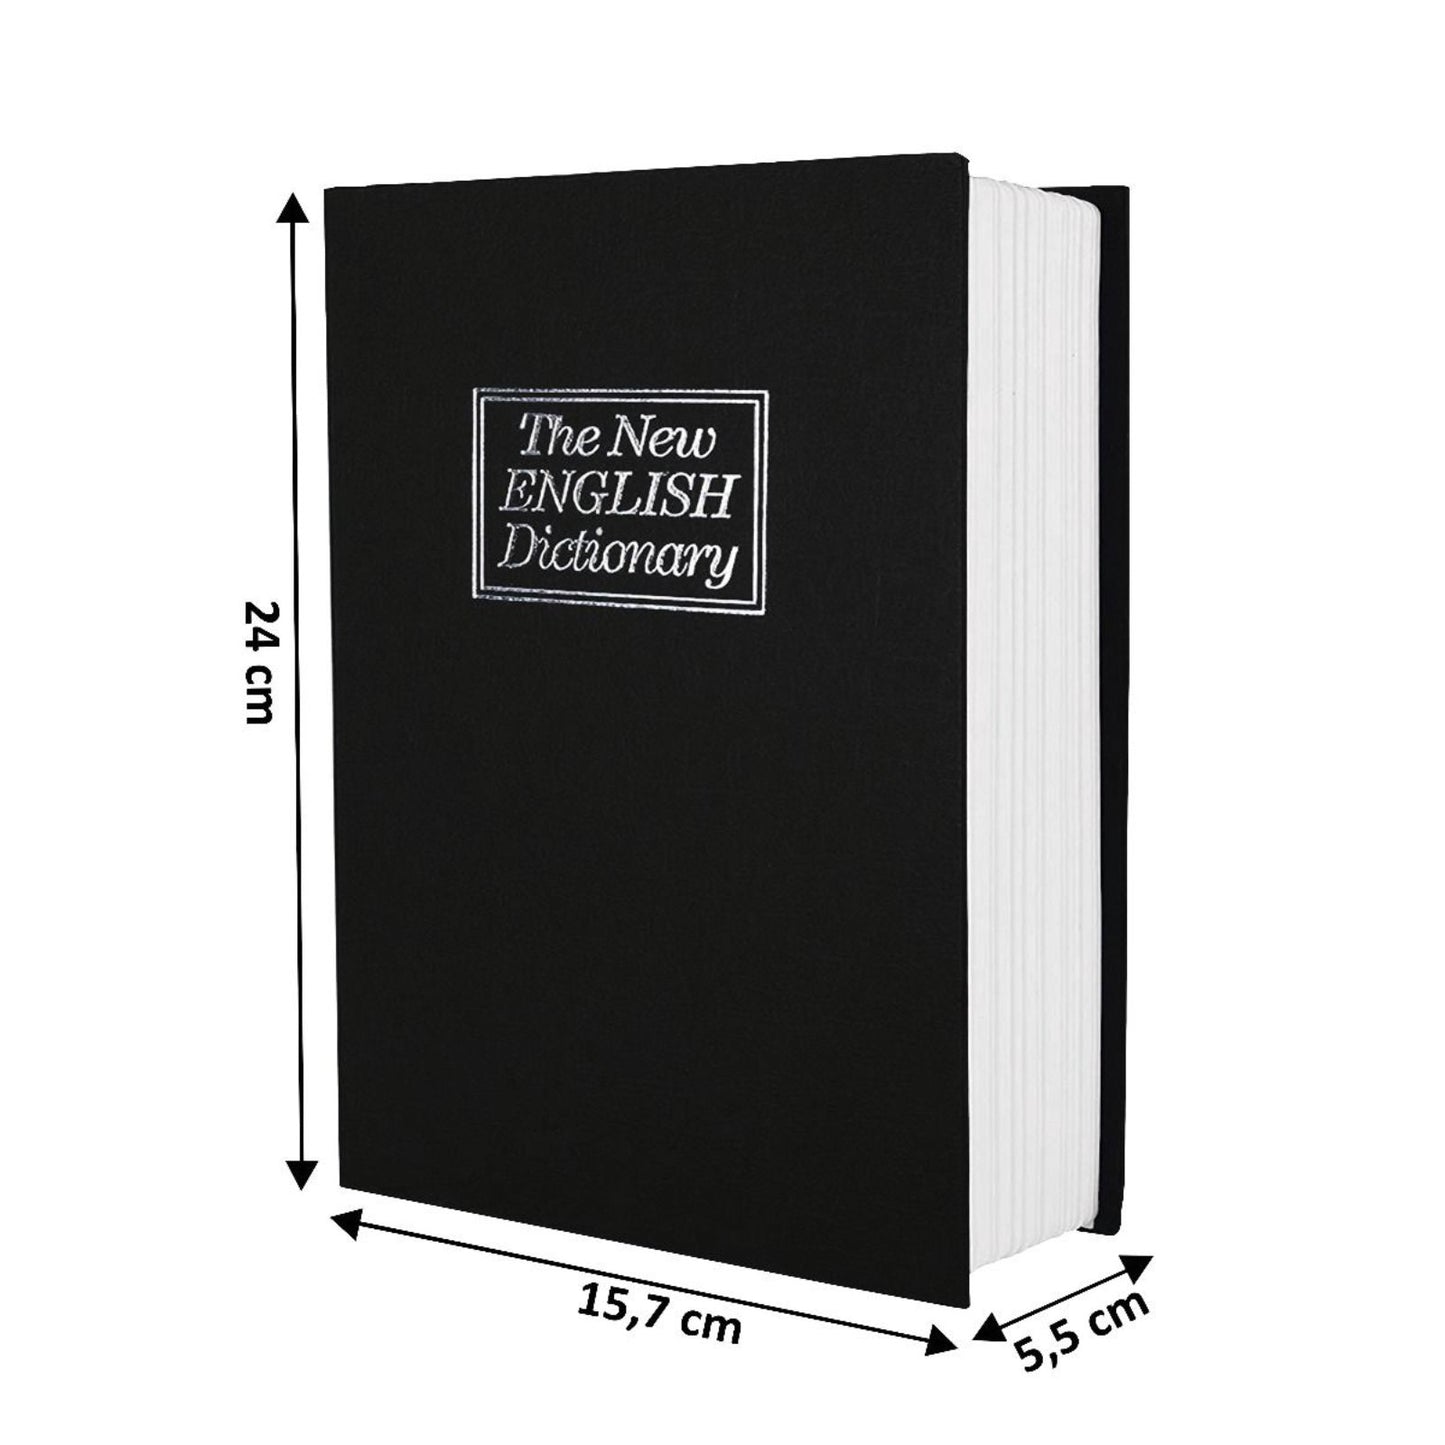 Buchtresor in Schwarz mit Zahlenschloss, englisches Wörterbuch, 240 mm x 115 mm x 55 mm